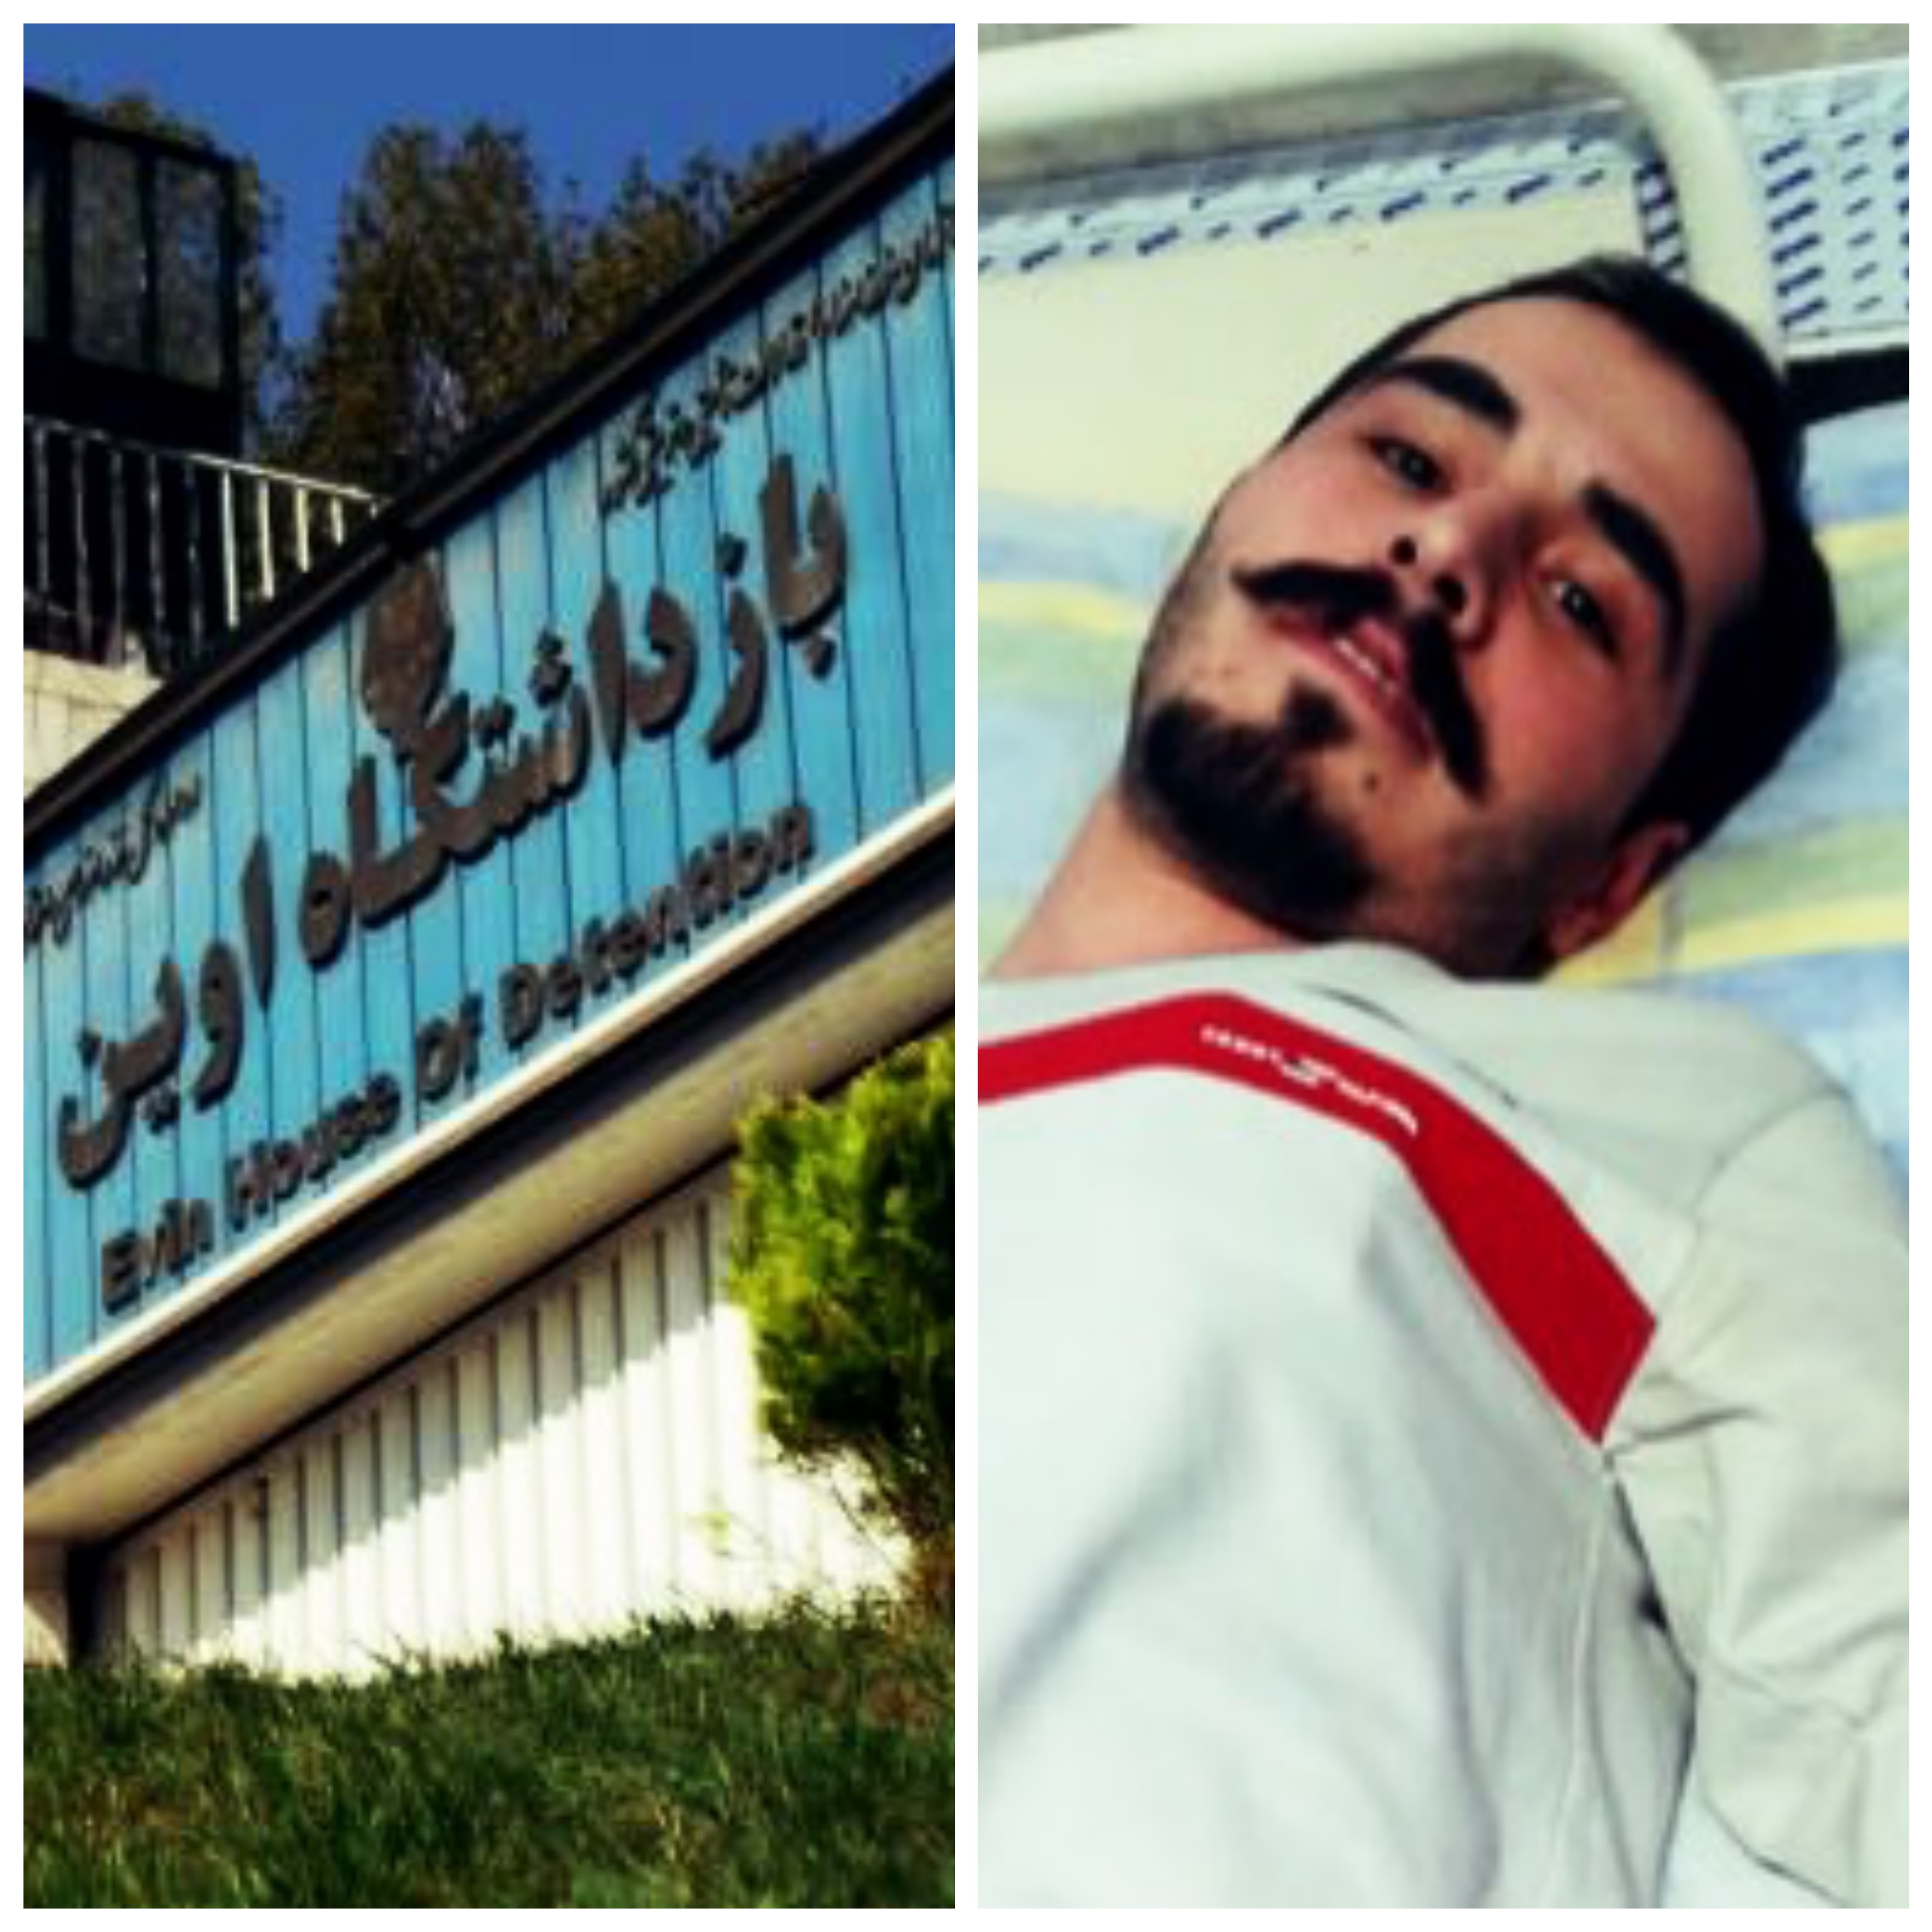 تایید عدم تحمل کیفر برای حسین رونقی از سوی سازمان پزشکی قانونی کشور